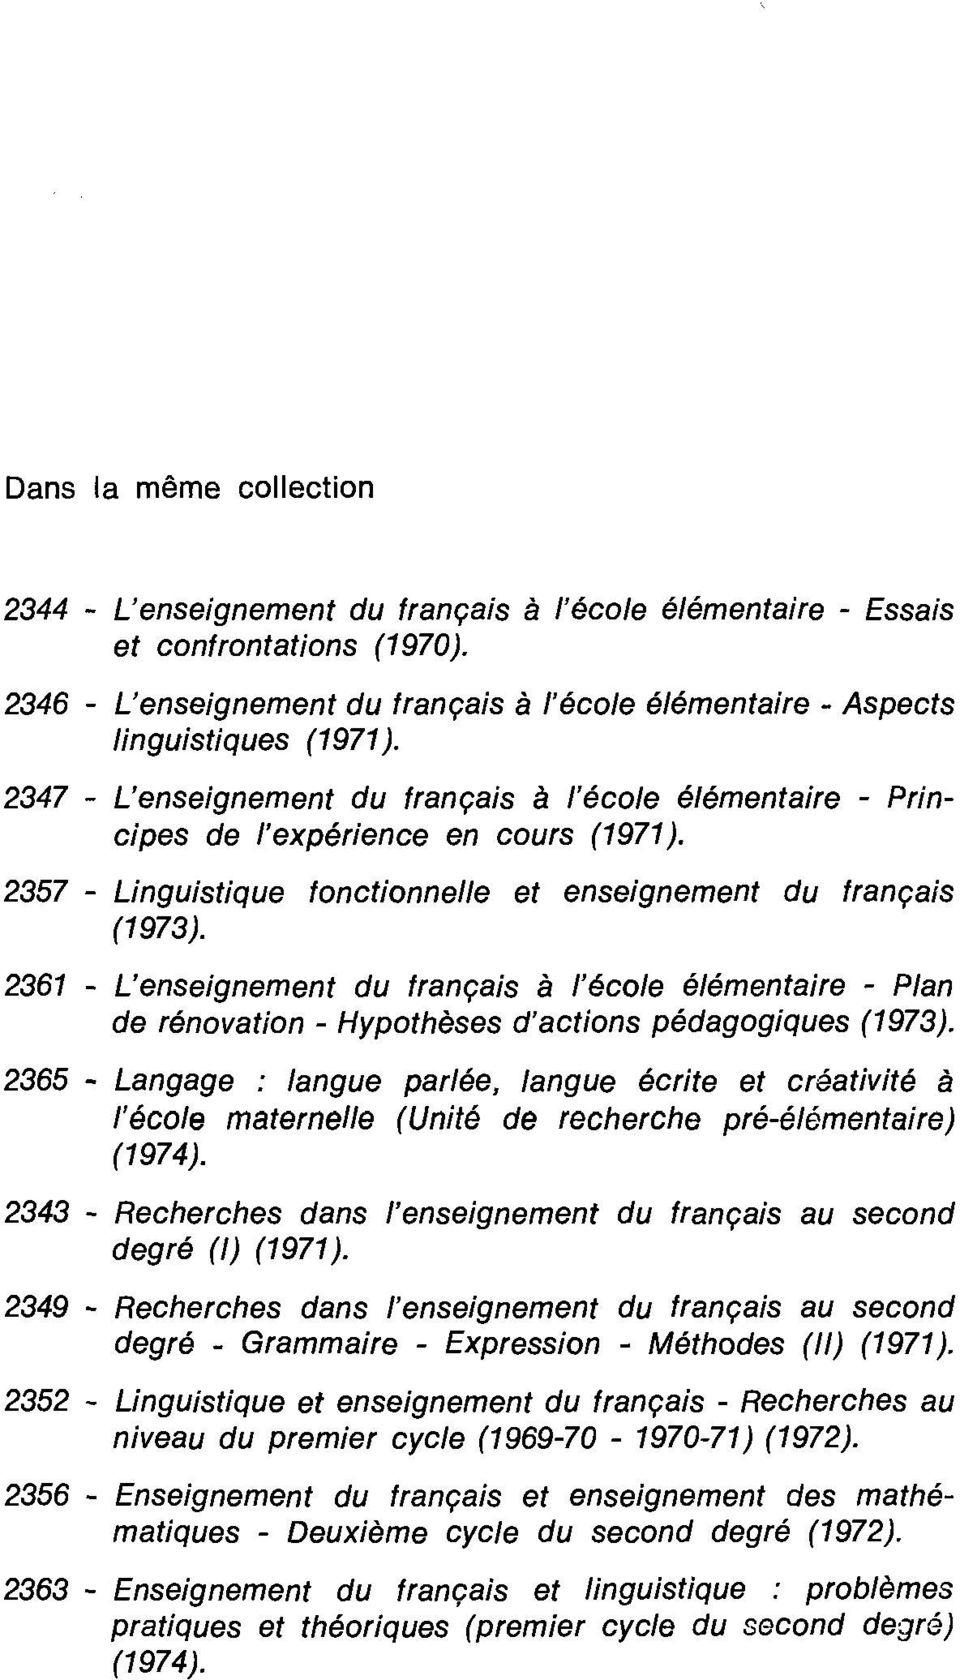 2357 - Linguistique fonctionnelle et enseignement du français (1973). 2361 - L'enseignement du français à l'école élémentaire - Plan de rénovation - Hypothèses d'actions pédagogiques (1973).